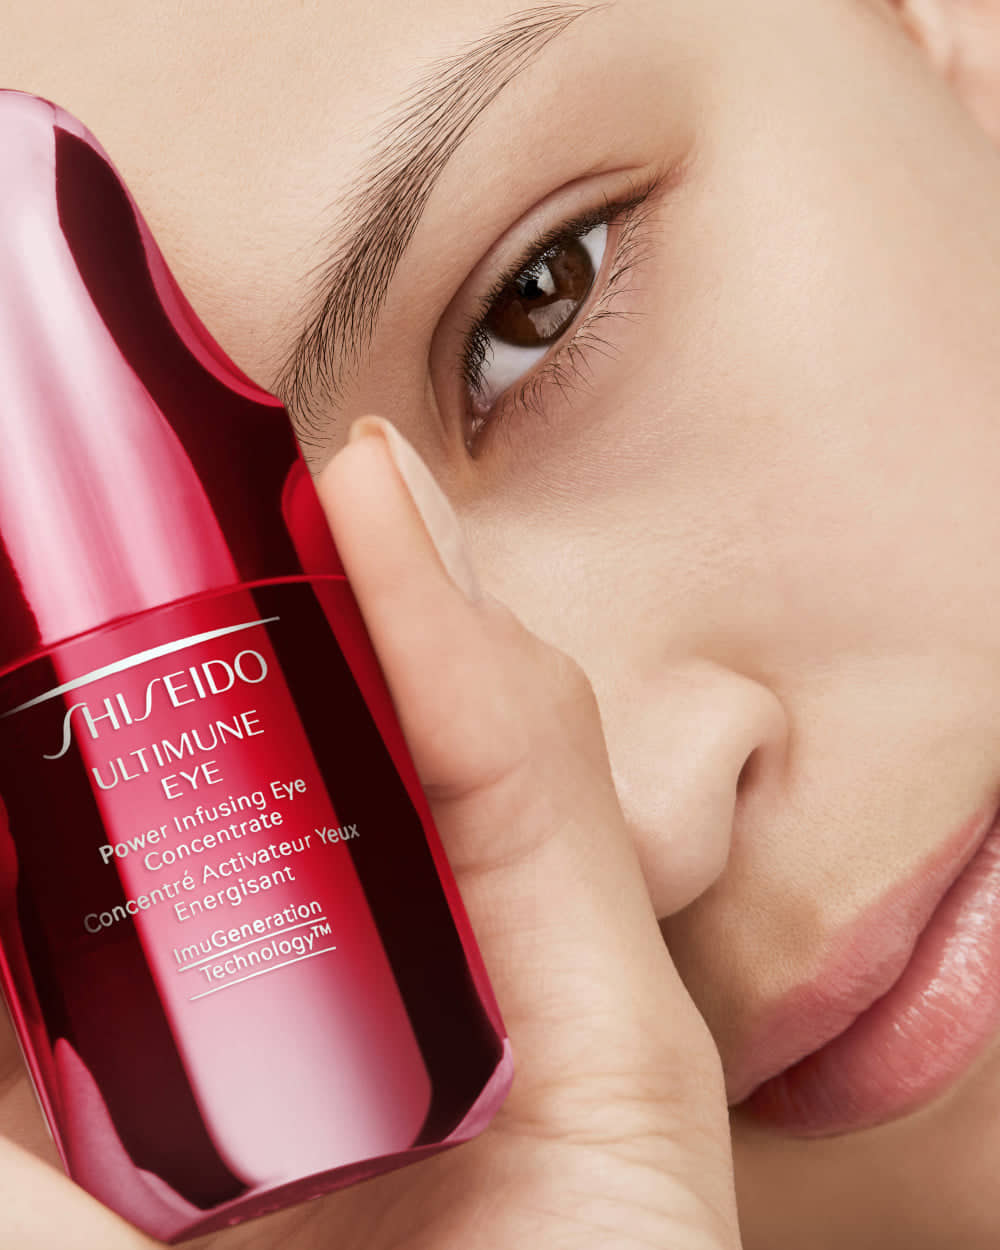 Shiseido брэндийн №1 серум “Ultimune”-ийн илүү сайжруулсан хувилбар гарлаа (фото 2)